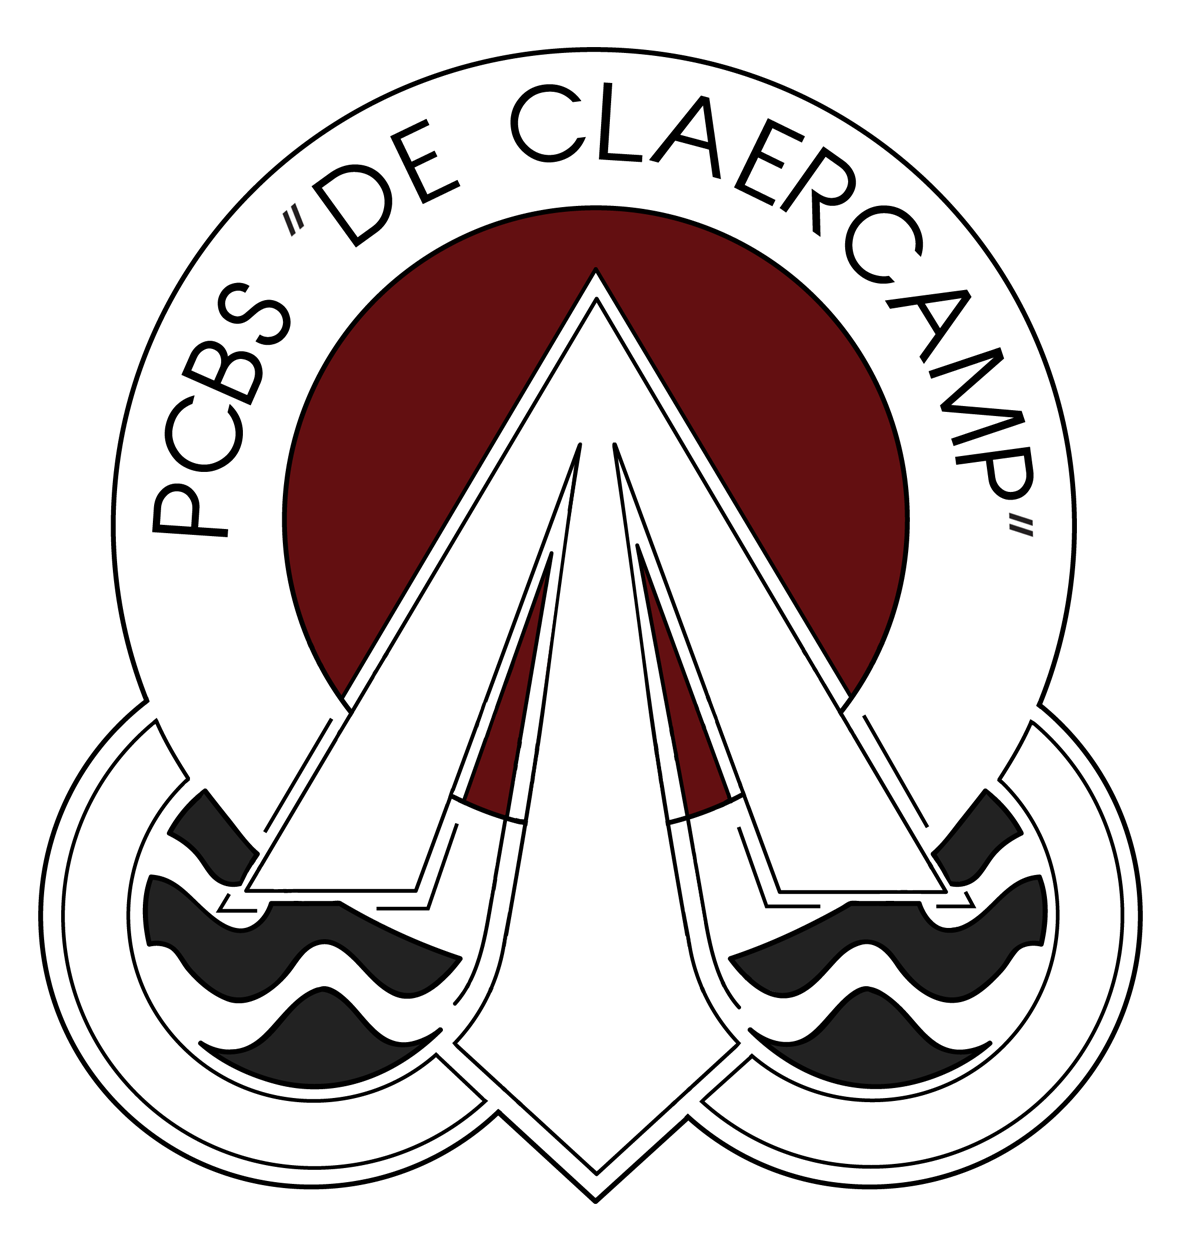 CBS de Claercamp logo